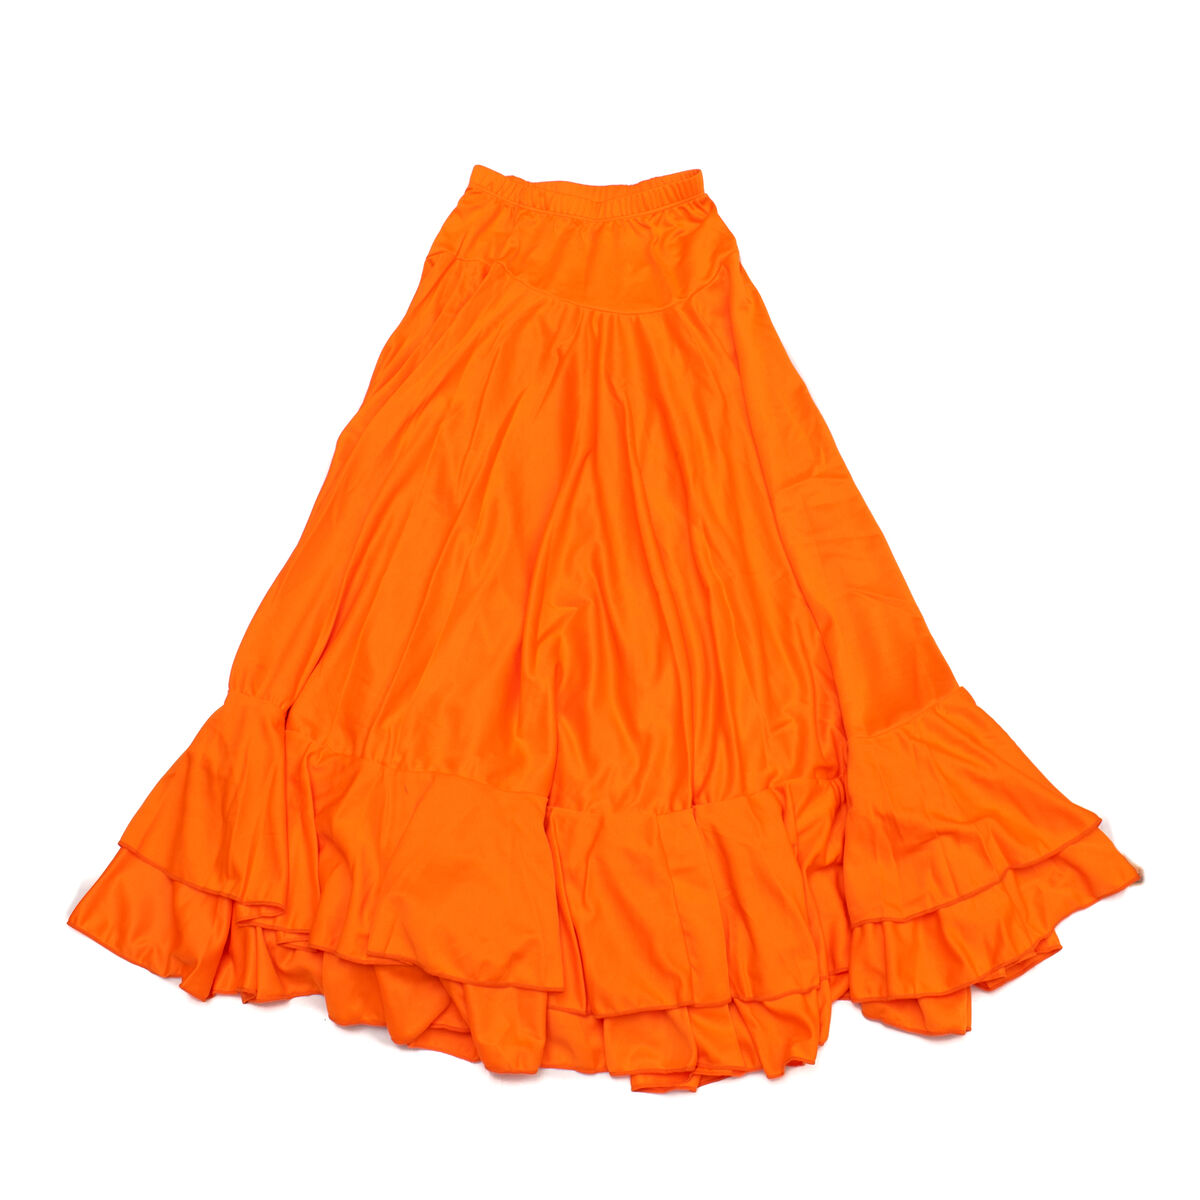 Flamenco Skirt for Women 8FQ03M Orange